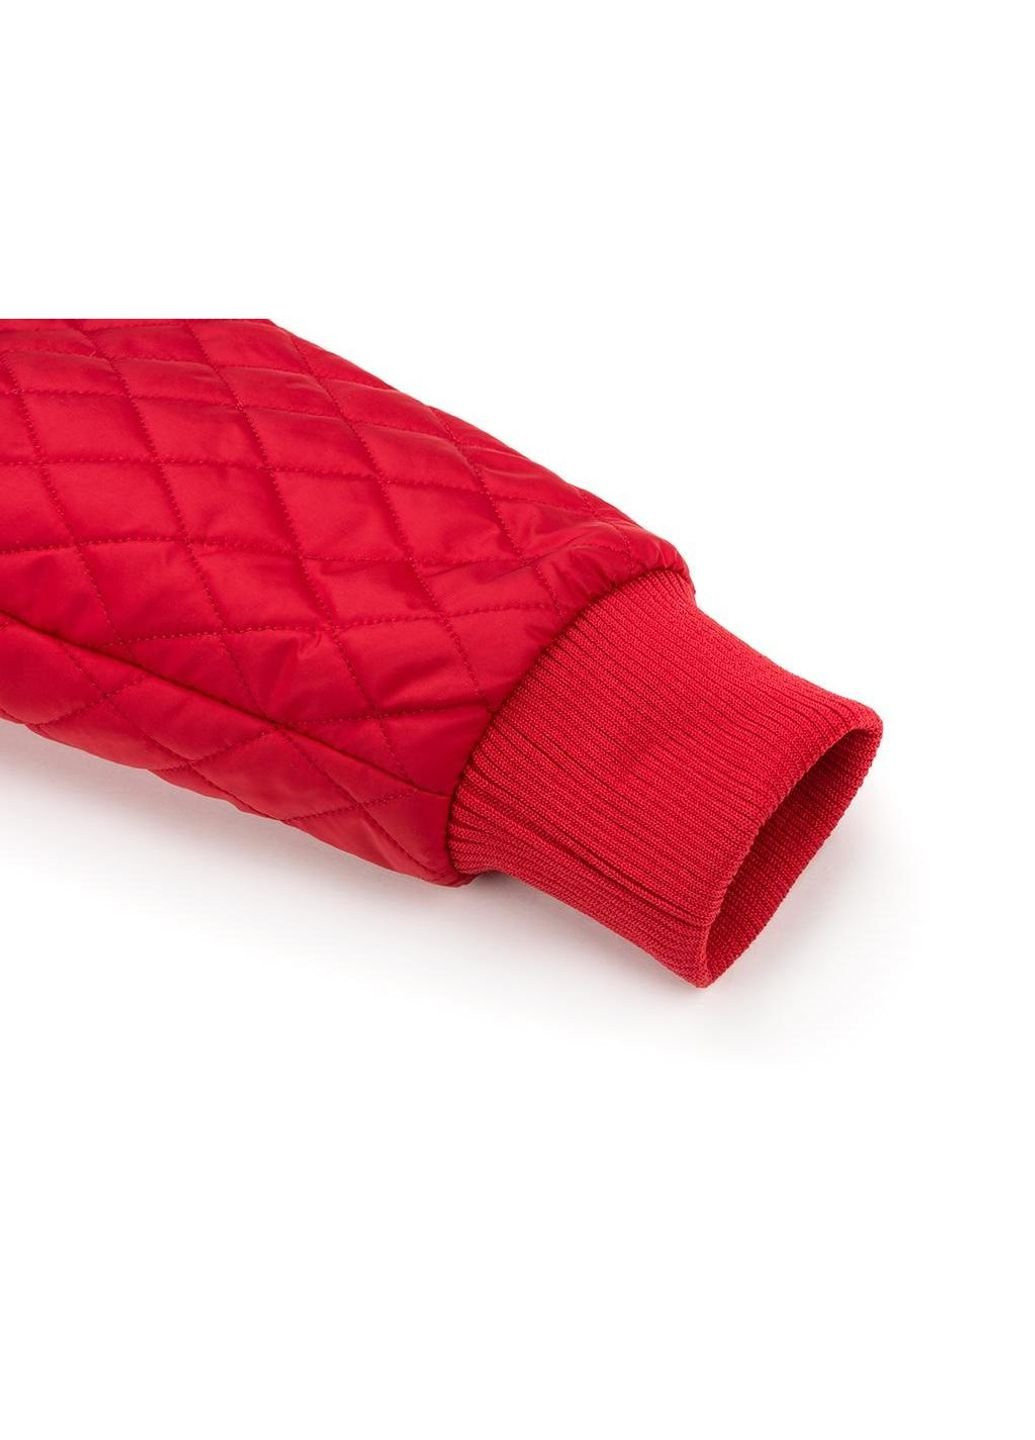 Красная демисезонная куртка стеганая с капюшоном (3439-122b-red) Verscon